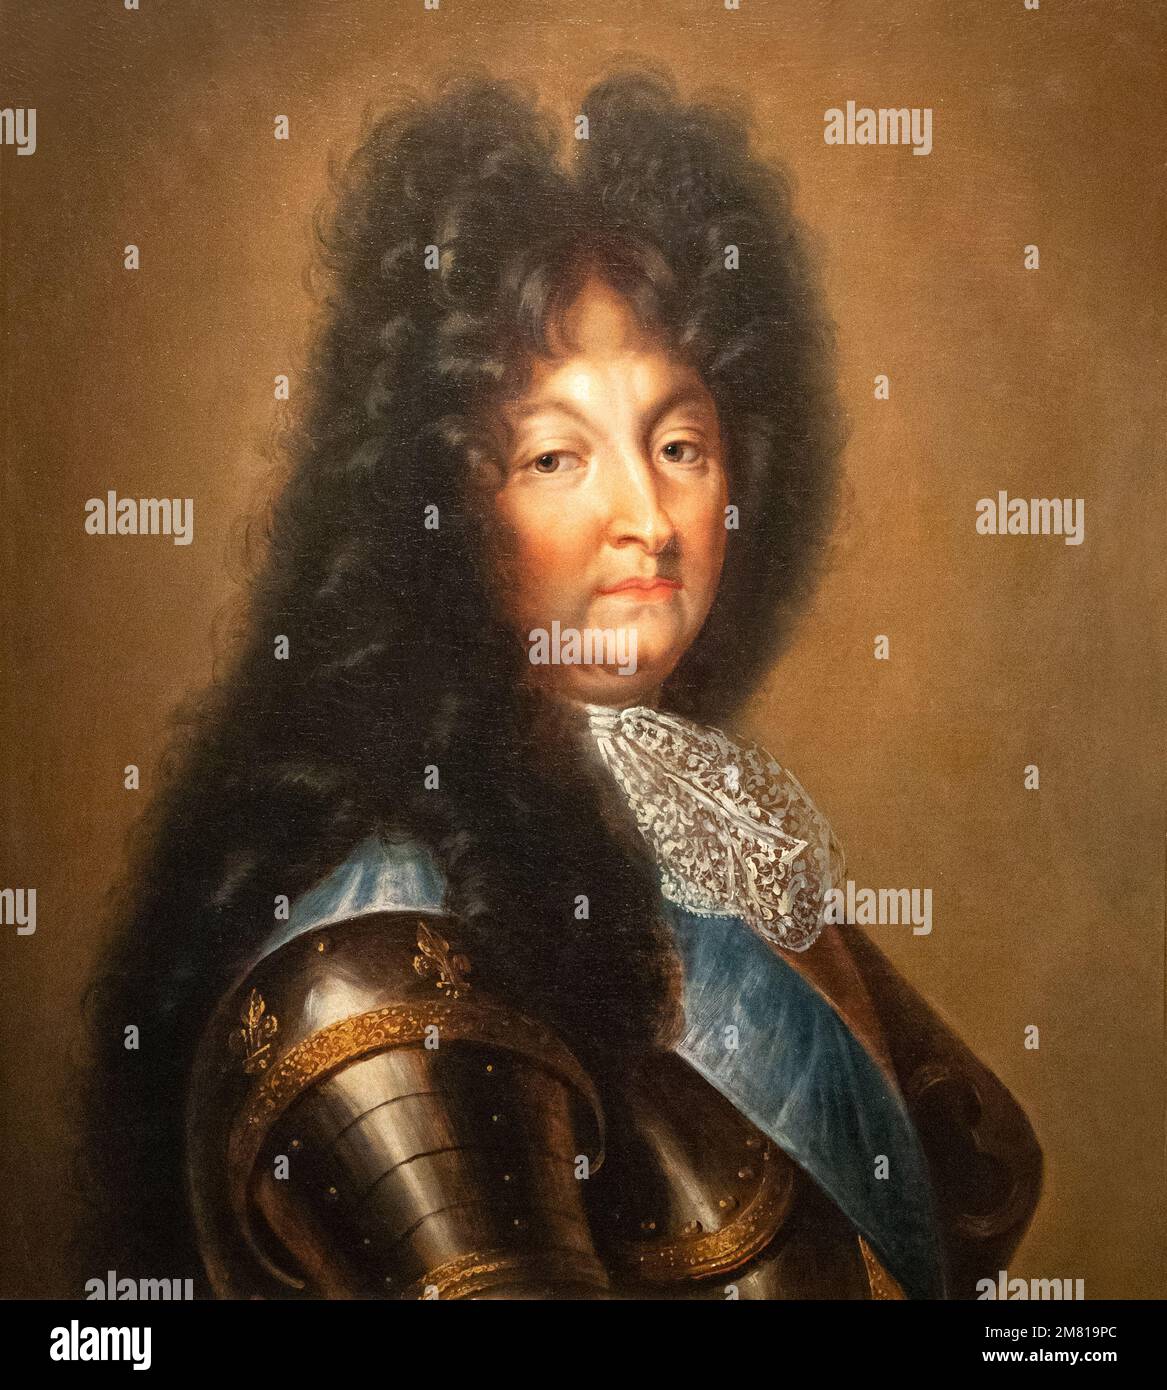 Porträt von König Ludwig XIV. Von Frankreich, König für 72 Jahre von 1643 bis 1715. Gemälde aus Paris nach 1694, im Wawel-Burgmuseum Krakau Polen Stockfoto